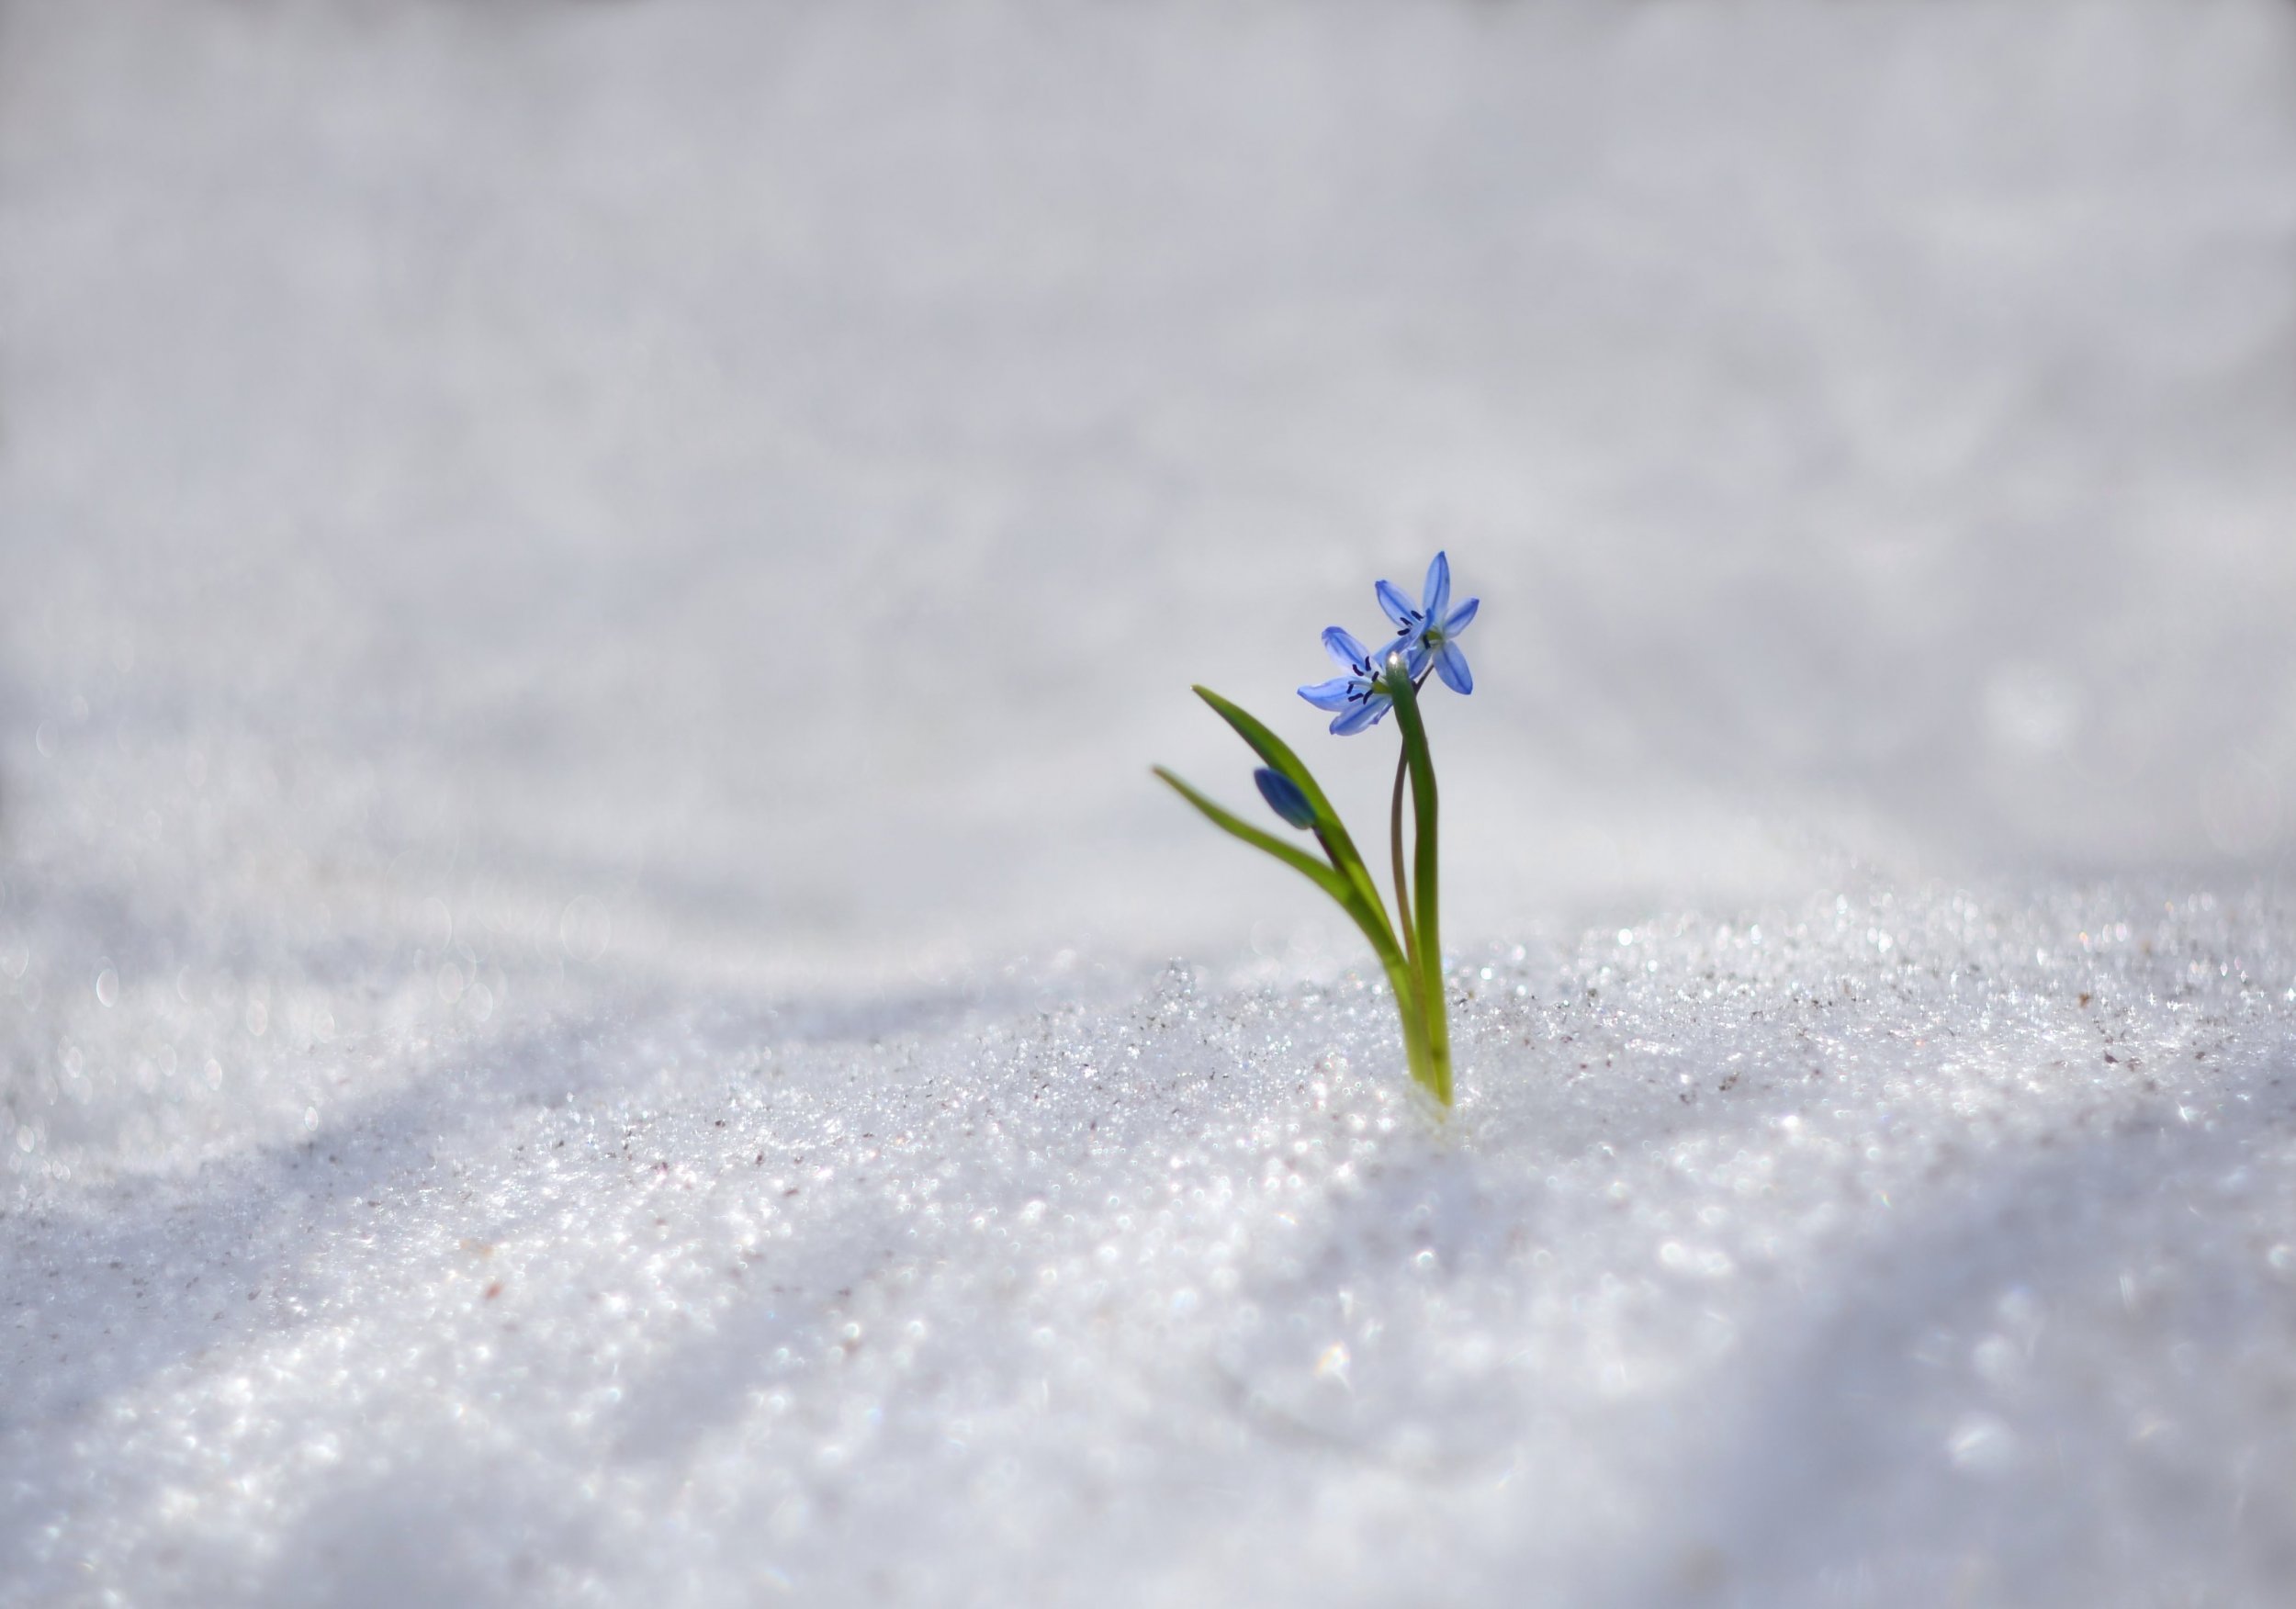 Читать и смотрели пролески сквозь снег. Цветы в снегу фото. Прорастает сквозь снежок к солнечным лучам цветок маленький и нежный. Заснеженные низины. Картинка сквозь снег вырос цветок.